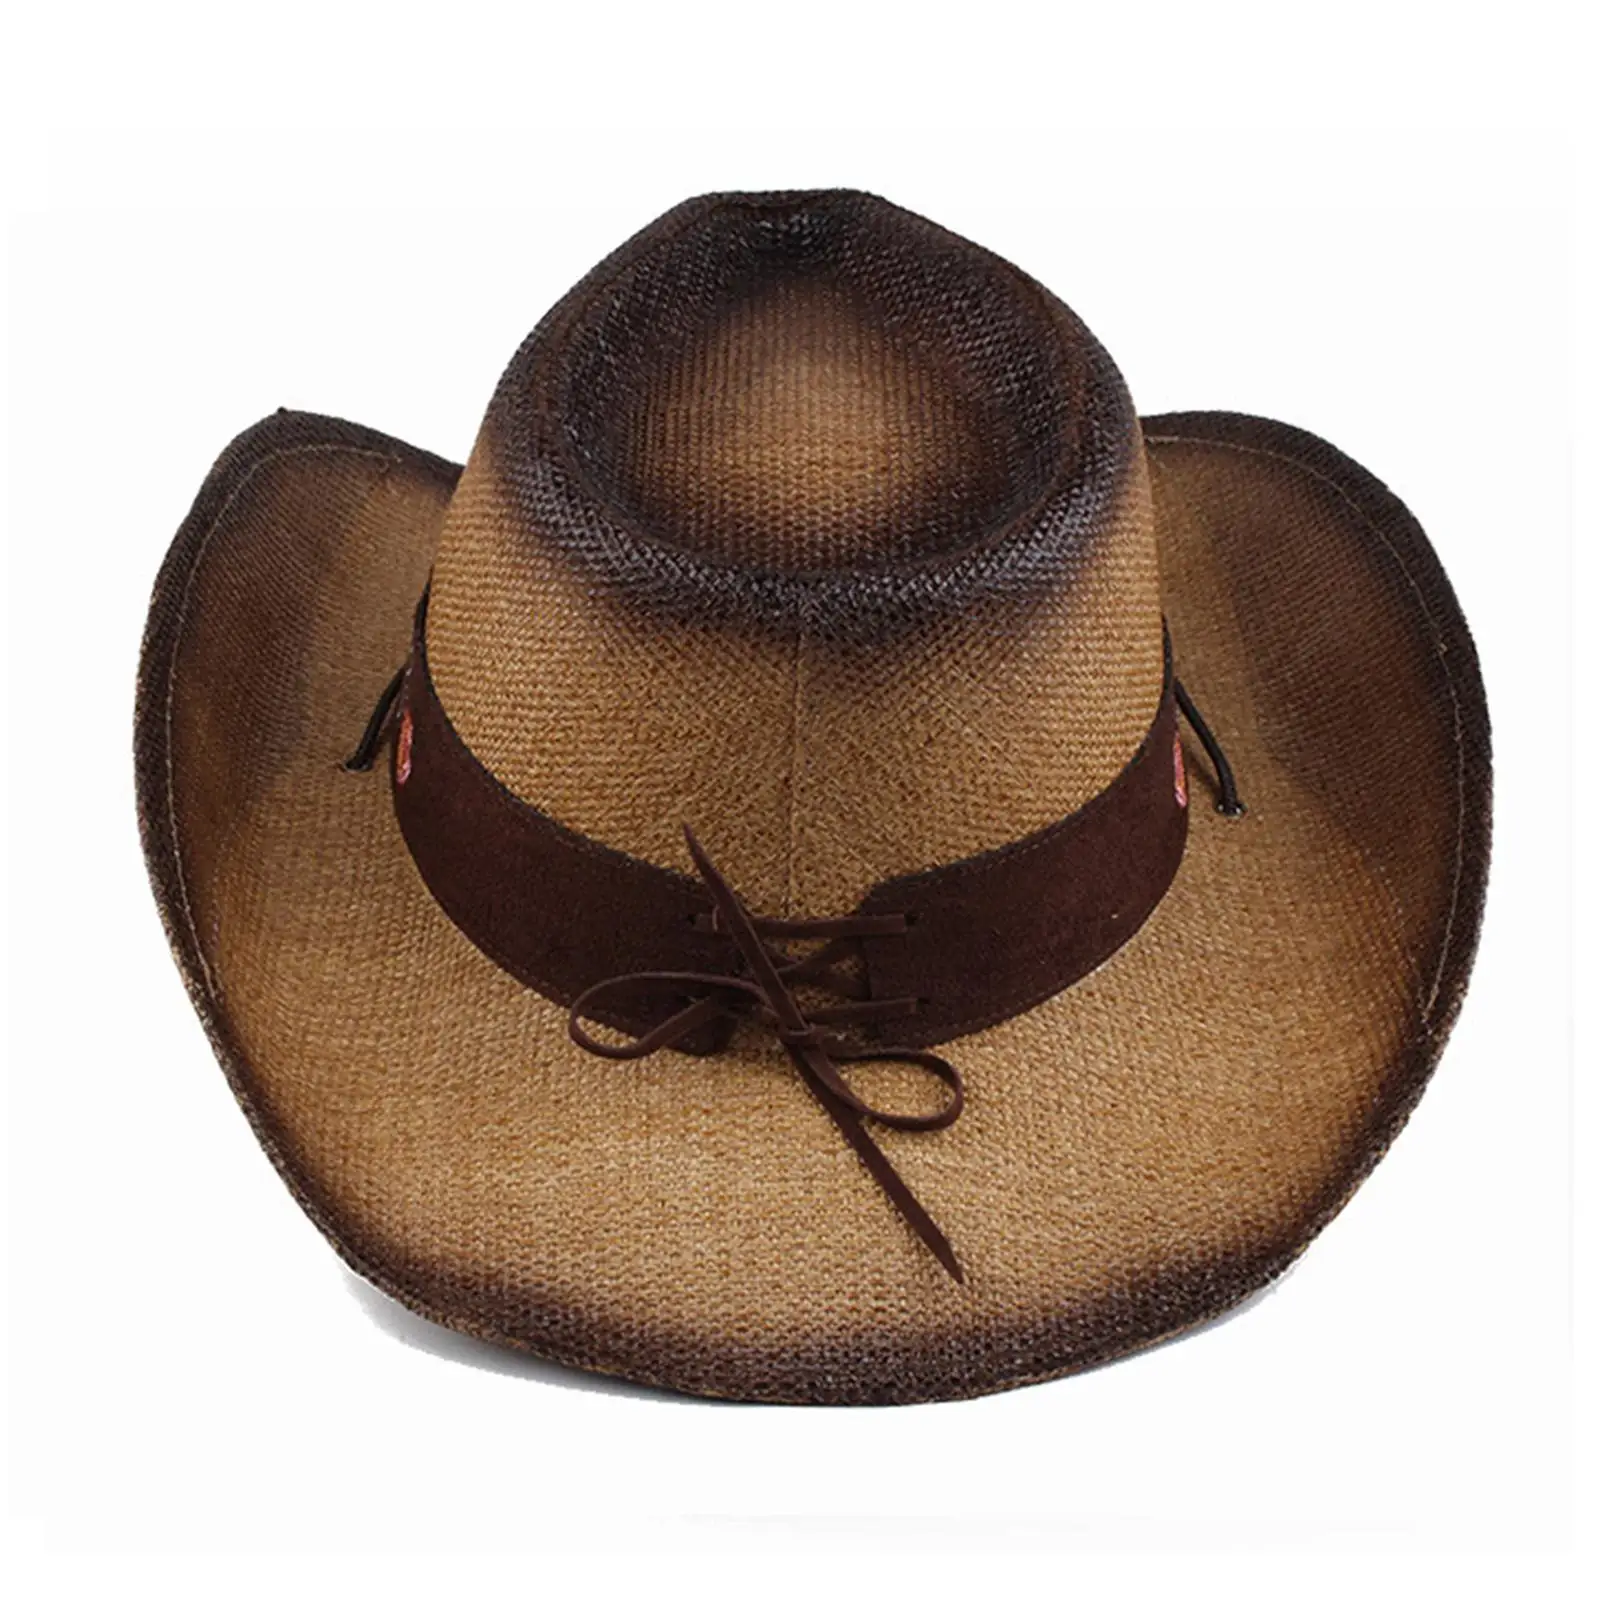 

Ковбойская шляпа в западном стиле с большими полями, искусственная шляпа, шляпа с вышивкой, соломенные шляпы для женщин и мужчин, летняя одежда, реквизит, модное платье